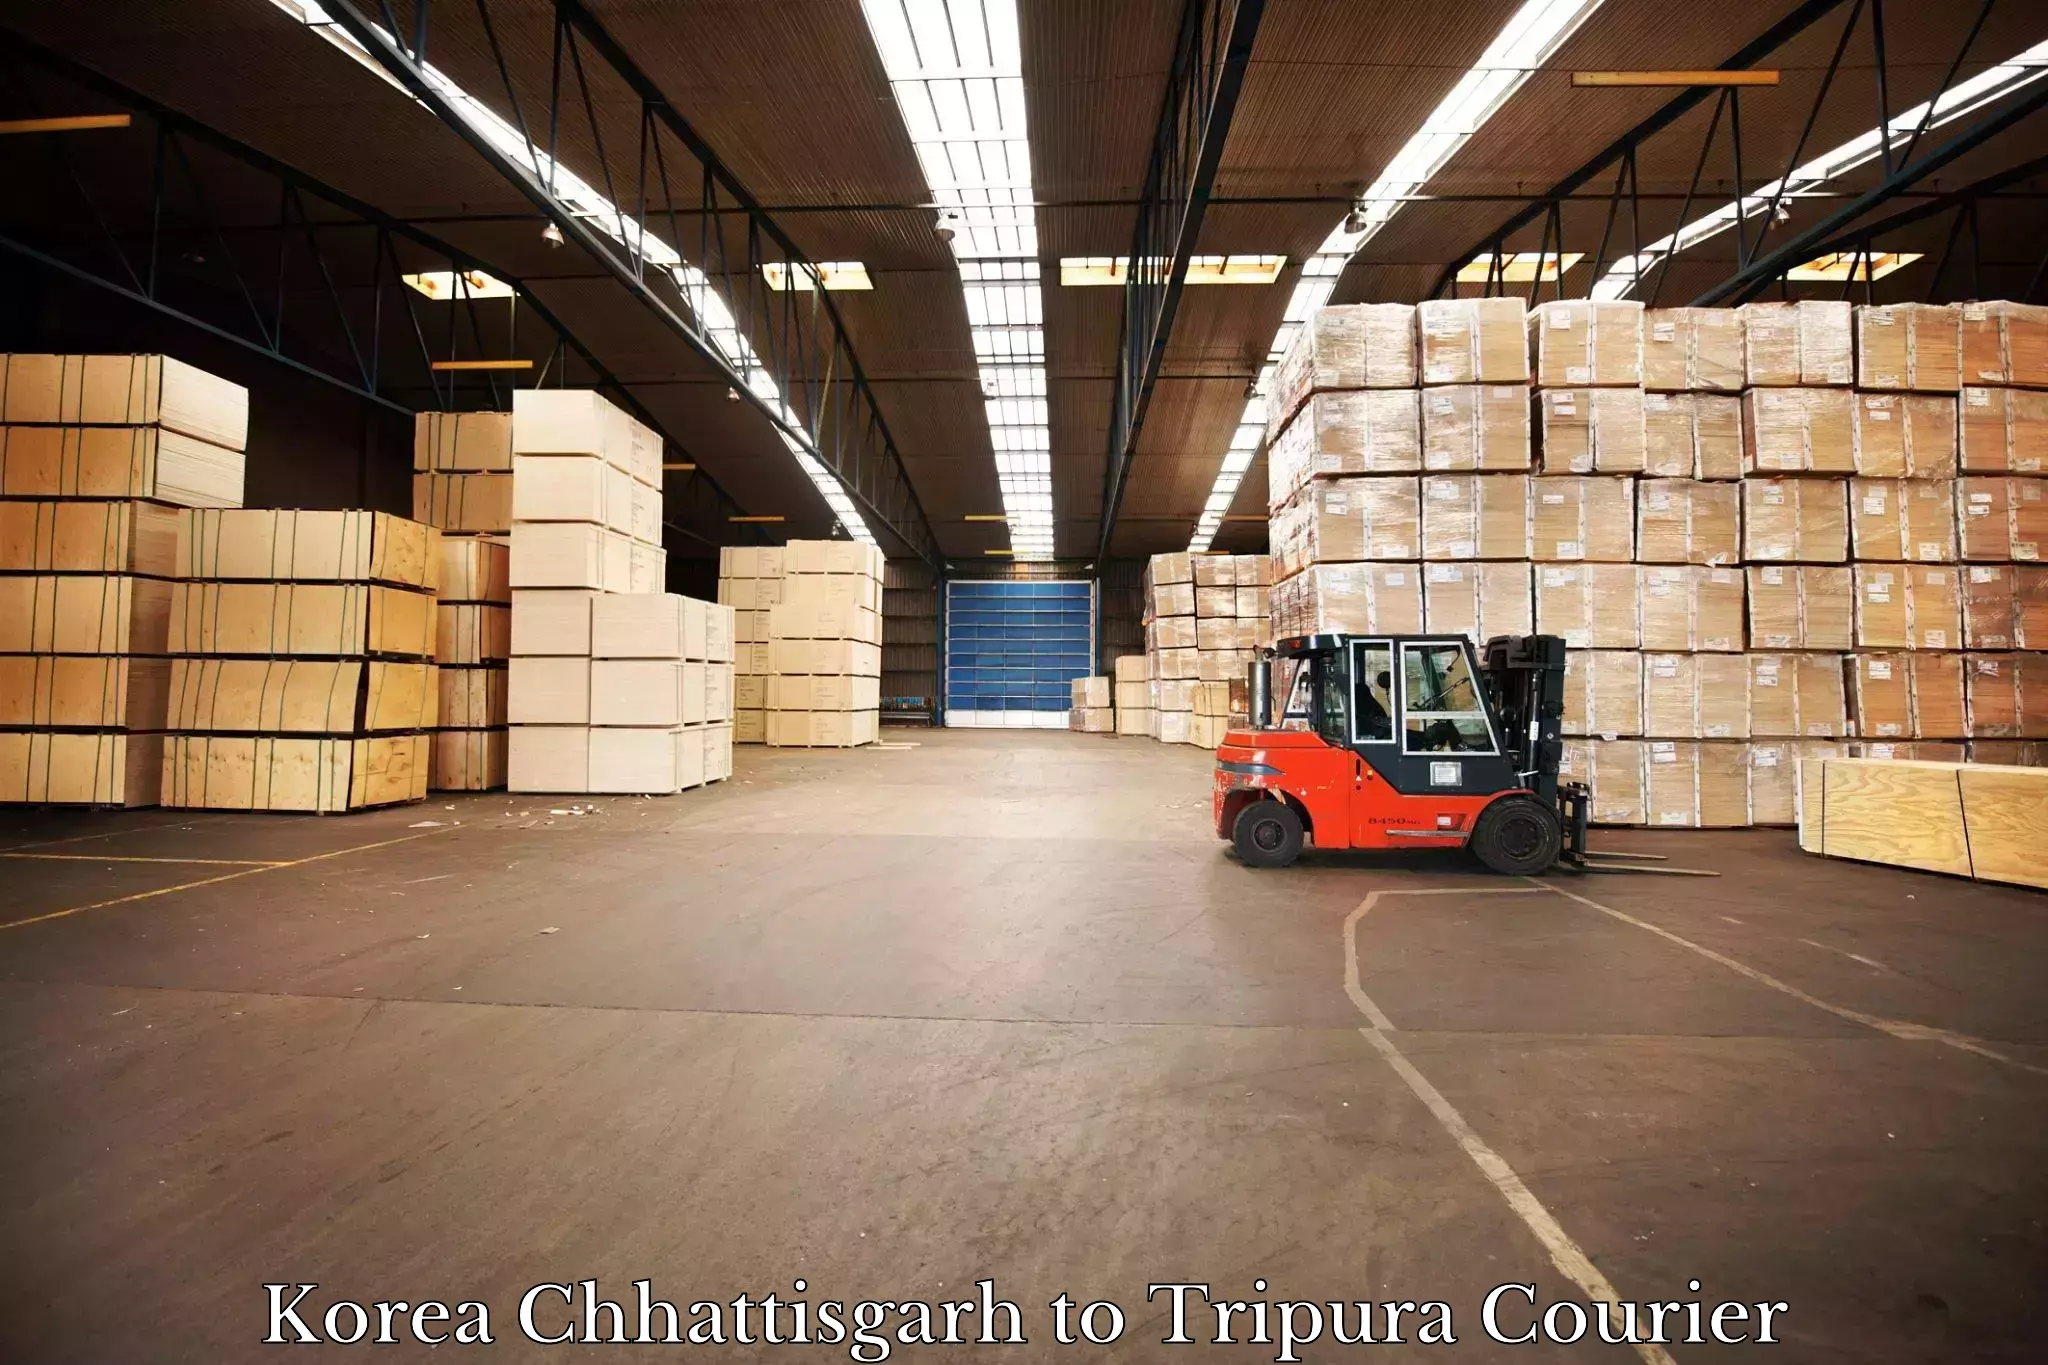 Professional parcel services in Korea Chhattisgarh to Tripura